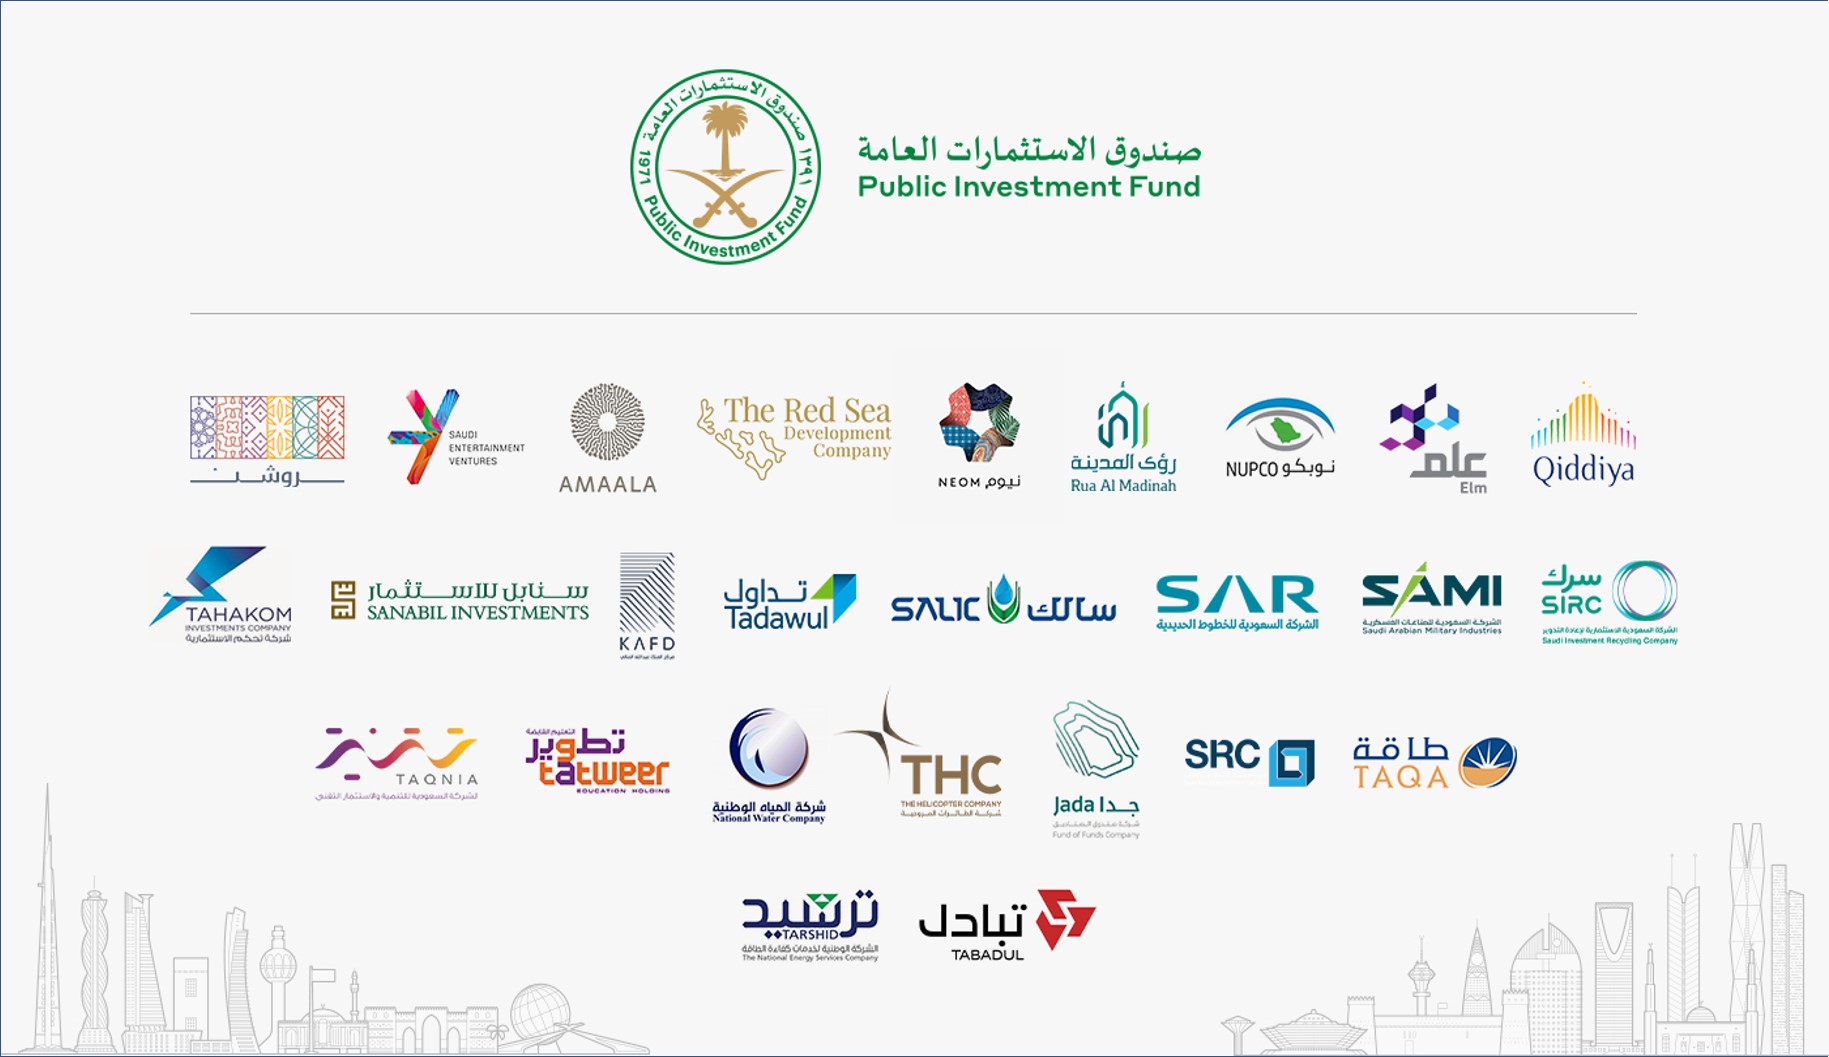 وظائف إدارية وتقنية يعلن عنها صندوق الاستثمارات العامة بالسعودية